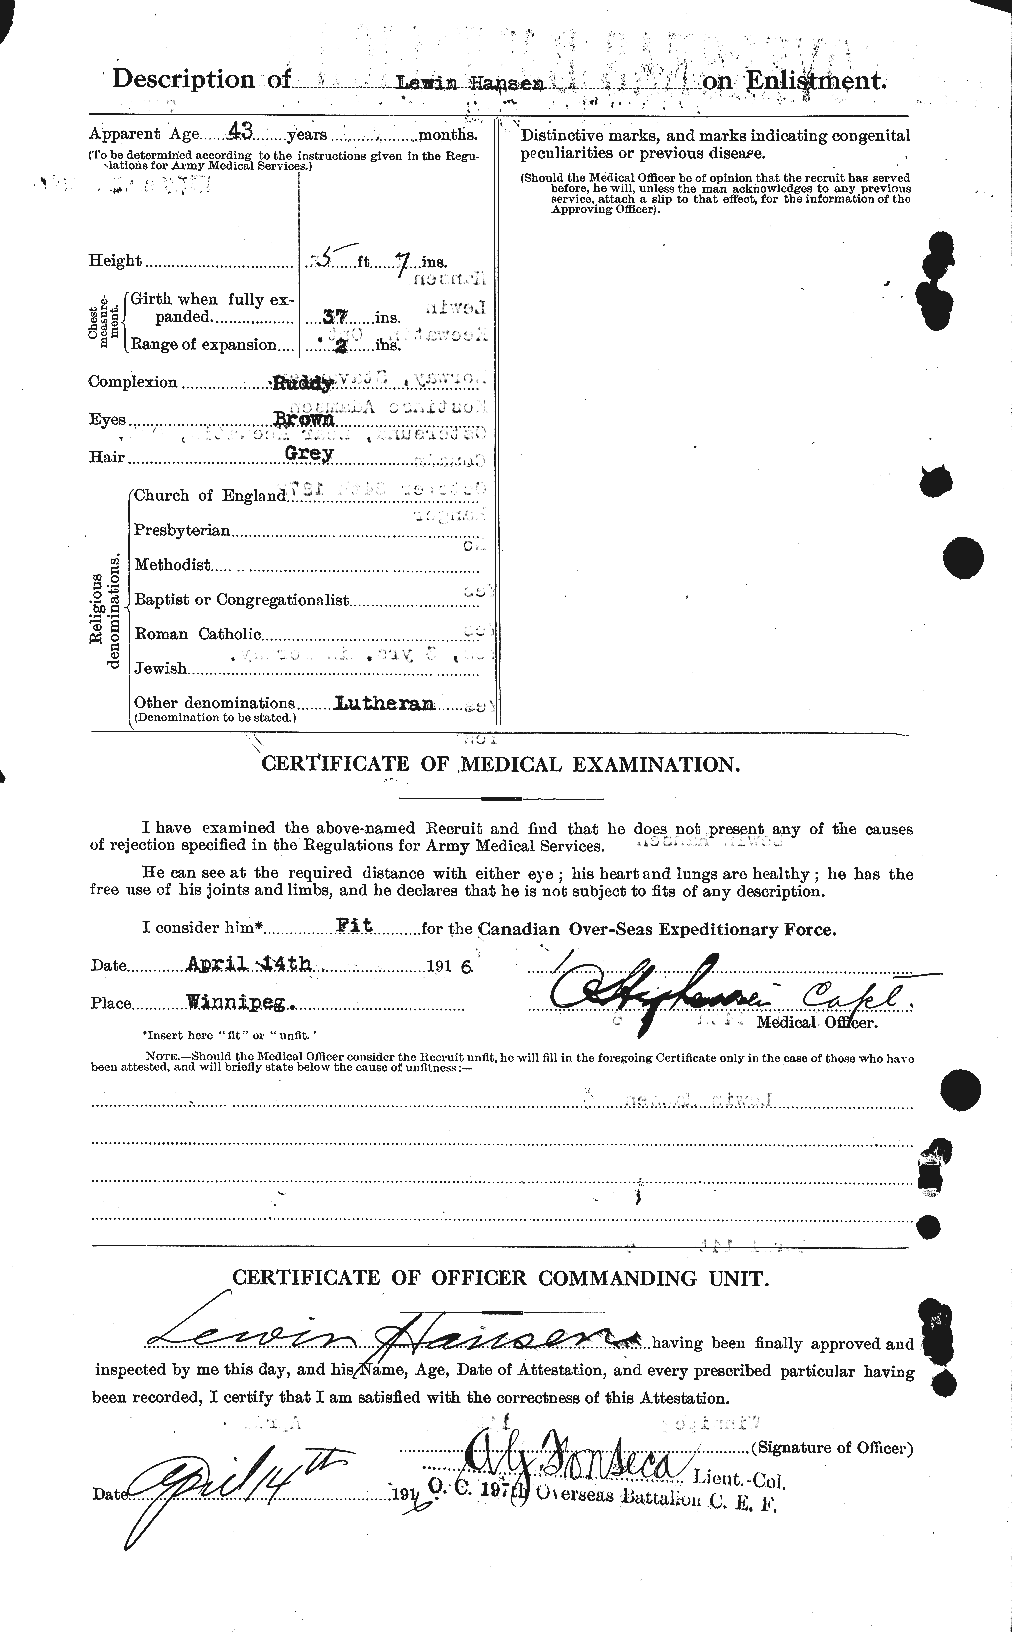 Dossiers du Personnel de la Première Guerre mondiale - CEC 378711b